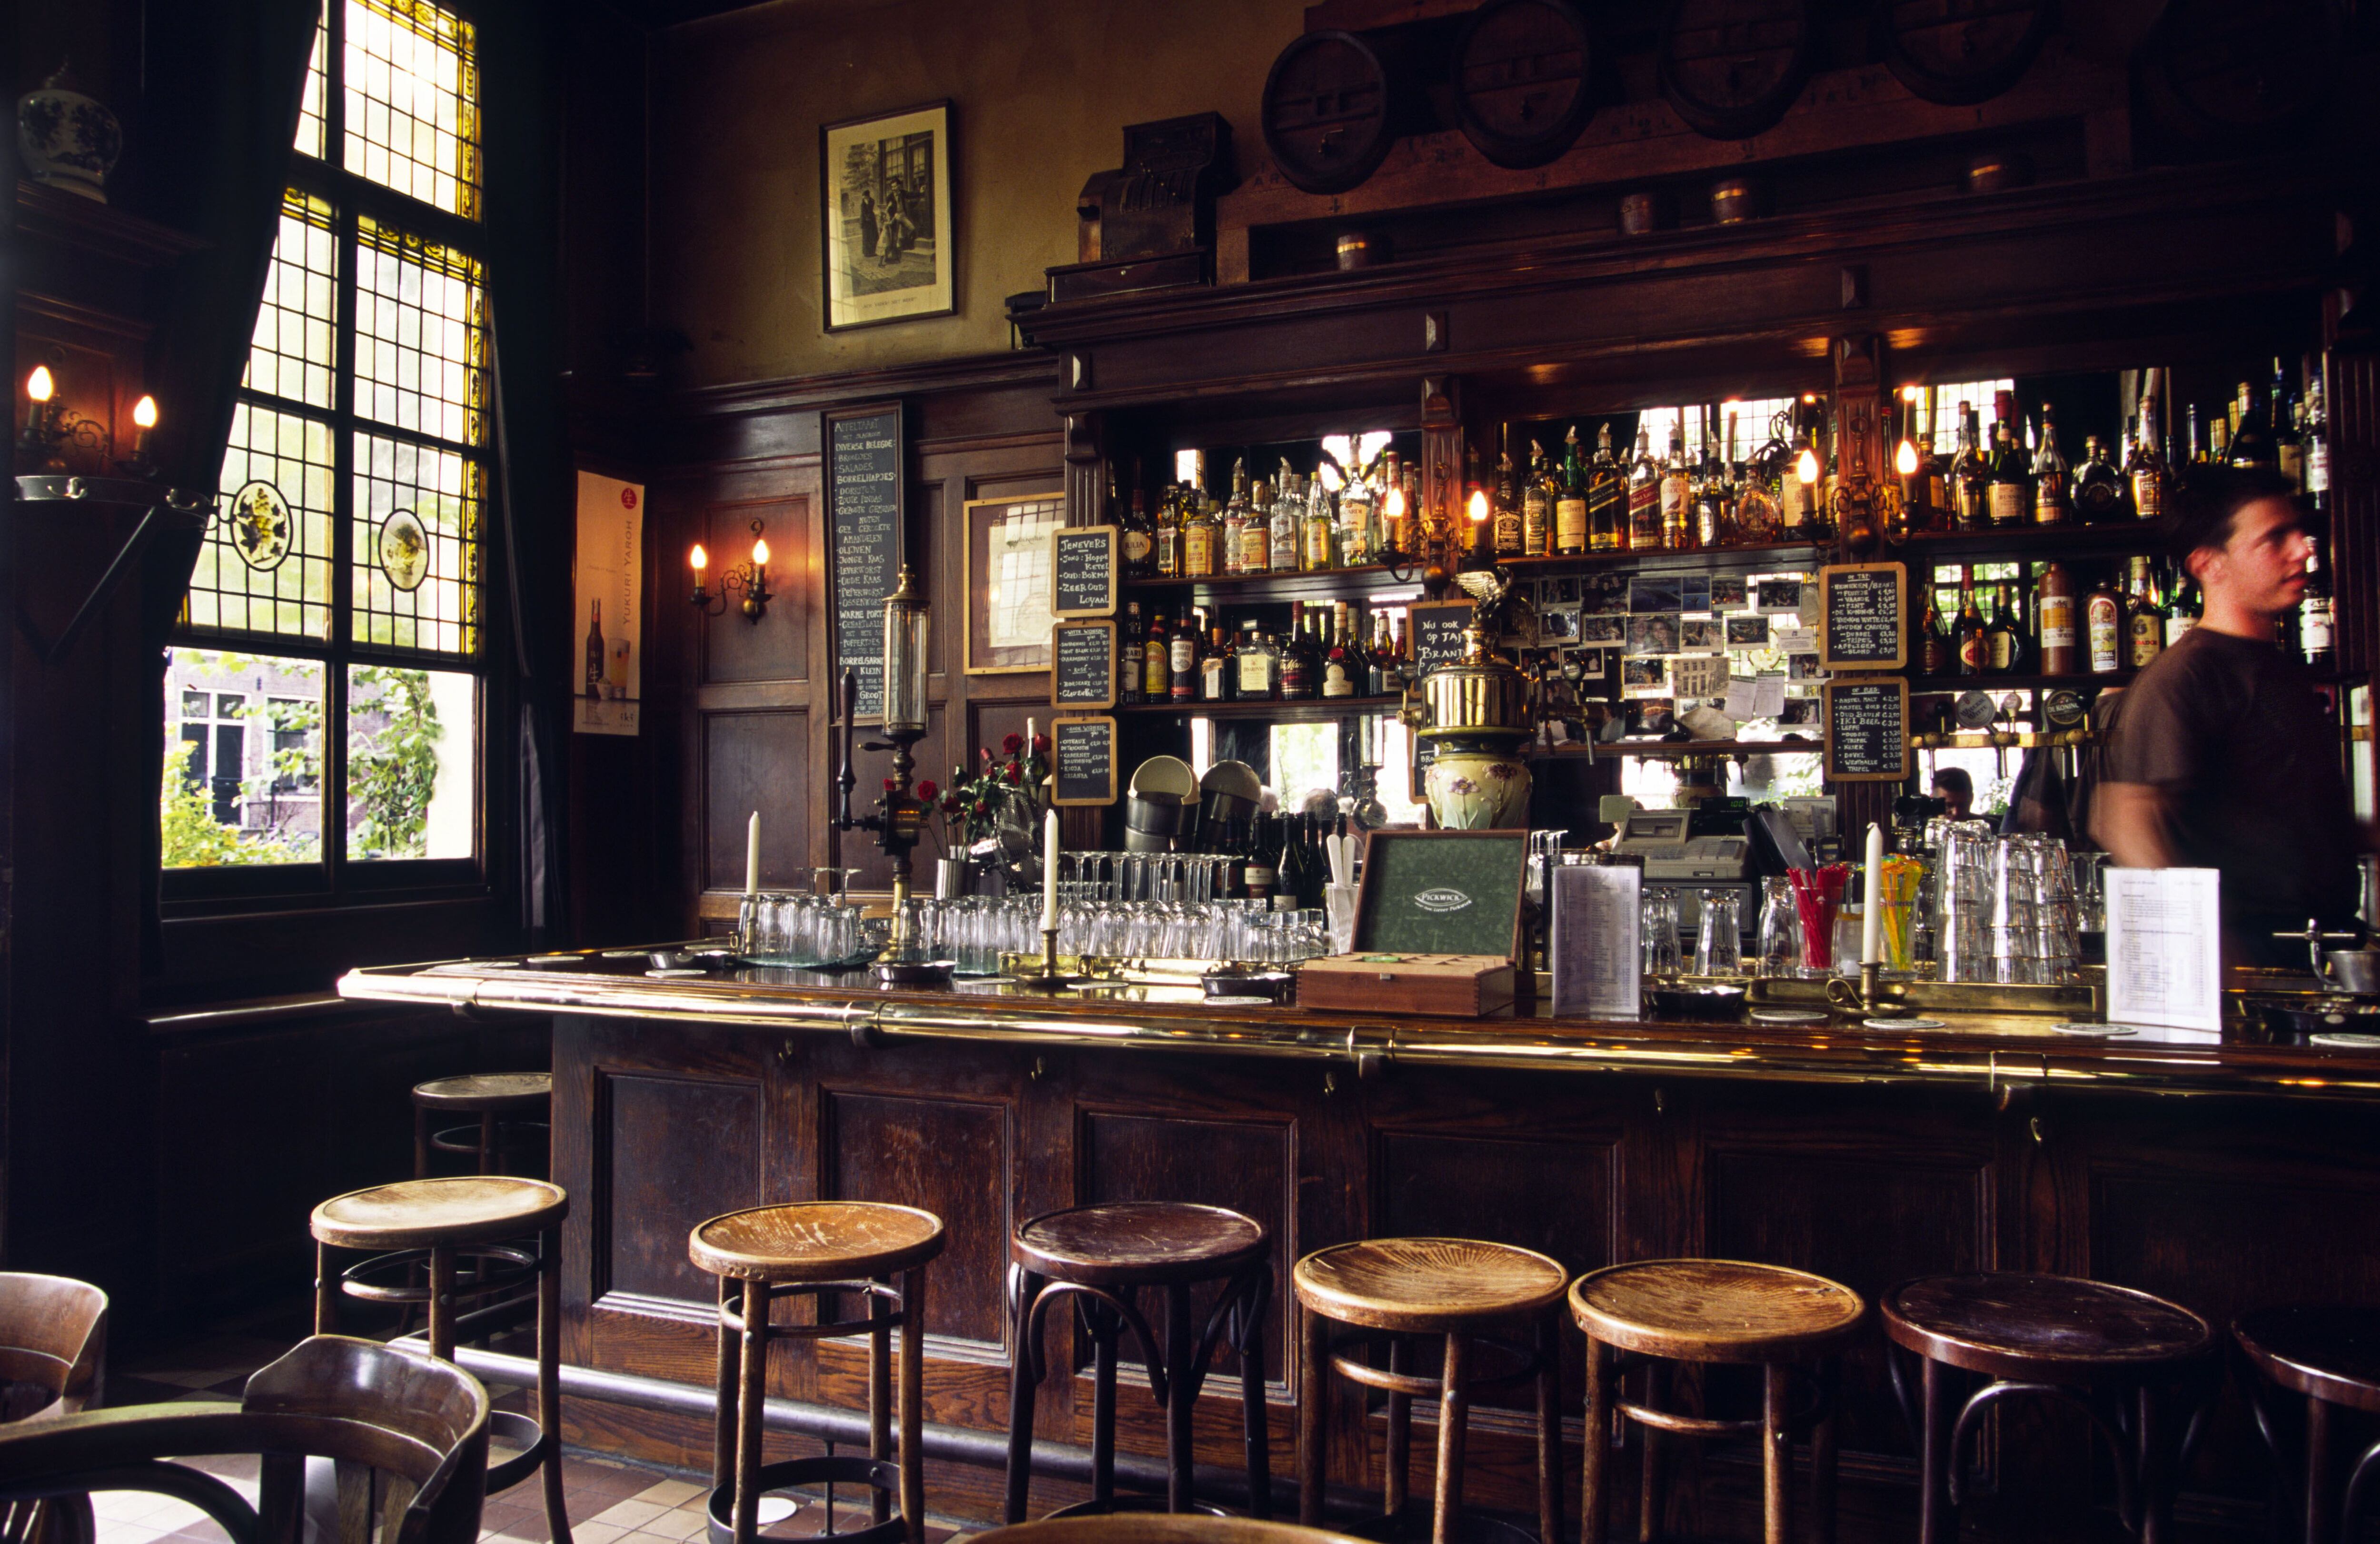 Interior del Café ‘t Smalle, una antigua destilería de 'jenever' (una ginebra neerlandesa) en Ámsterdam.